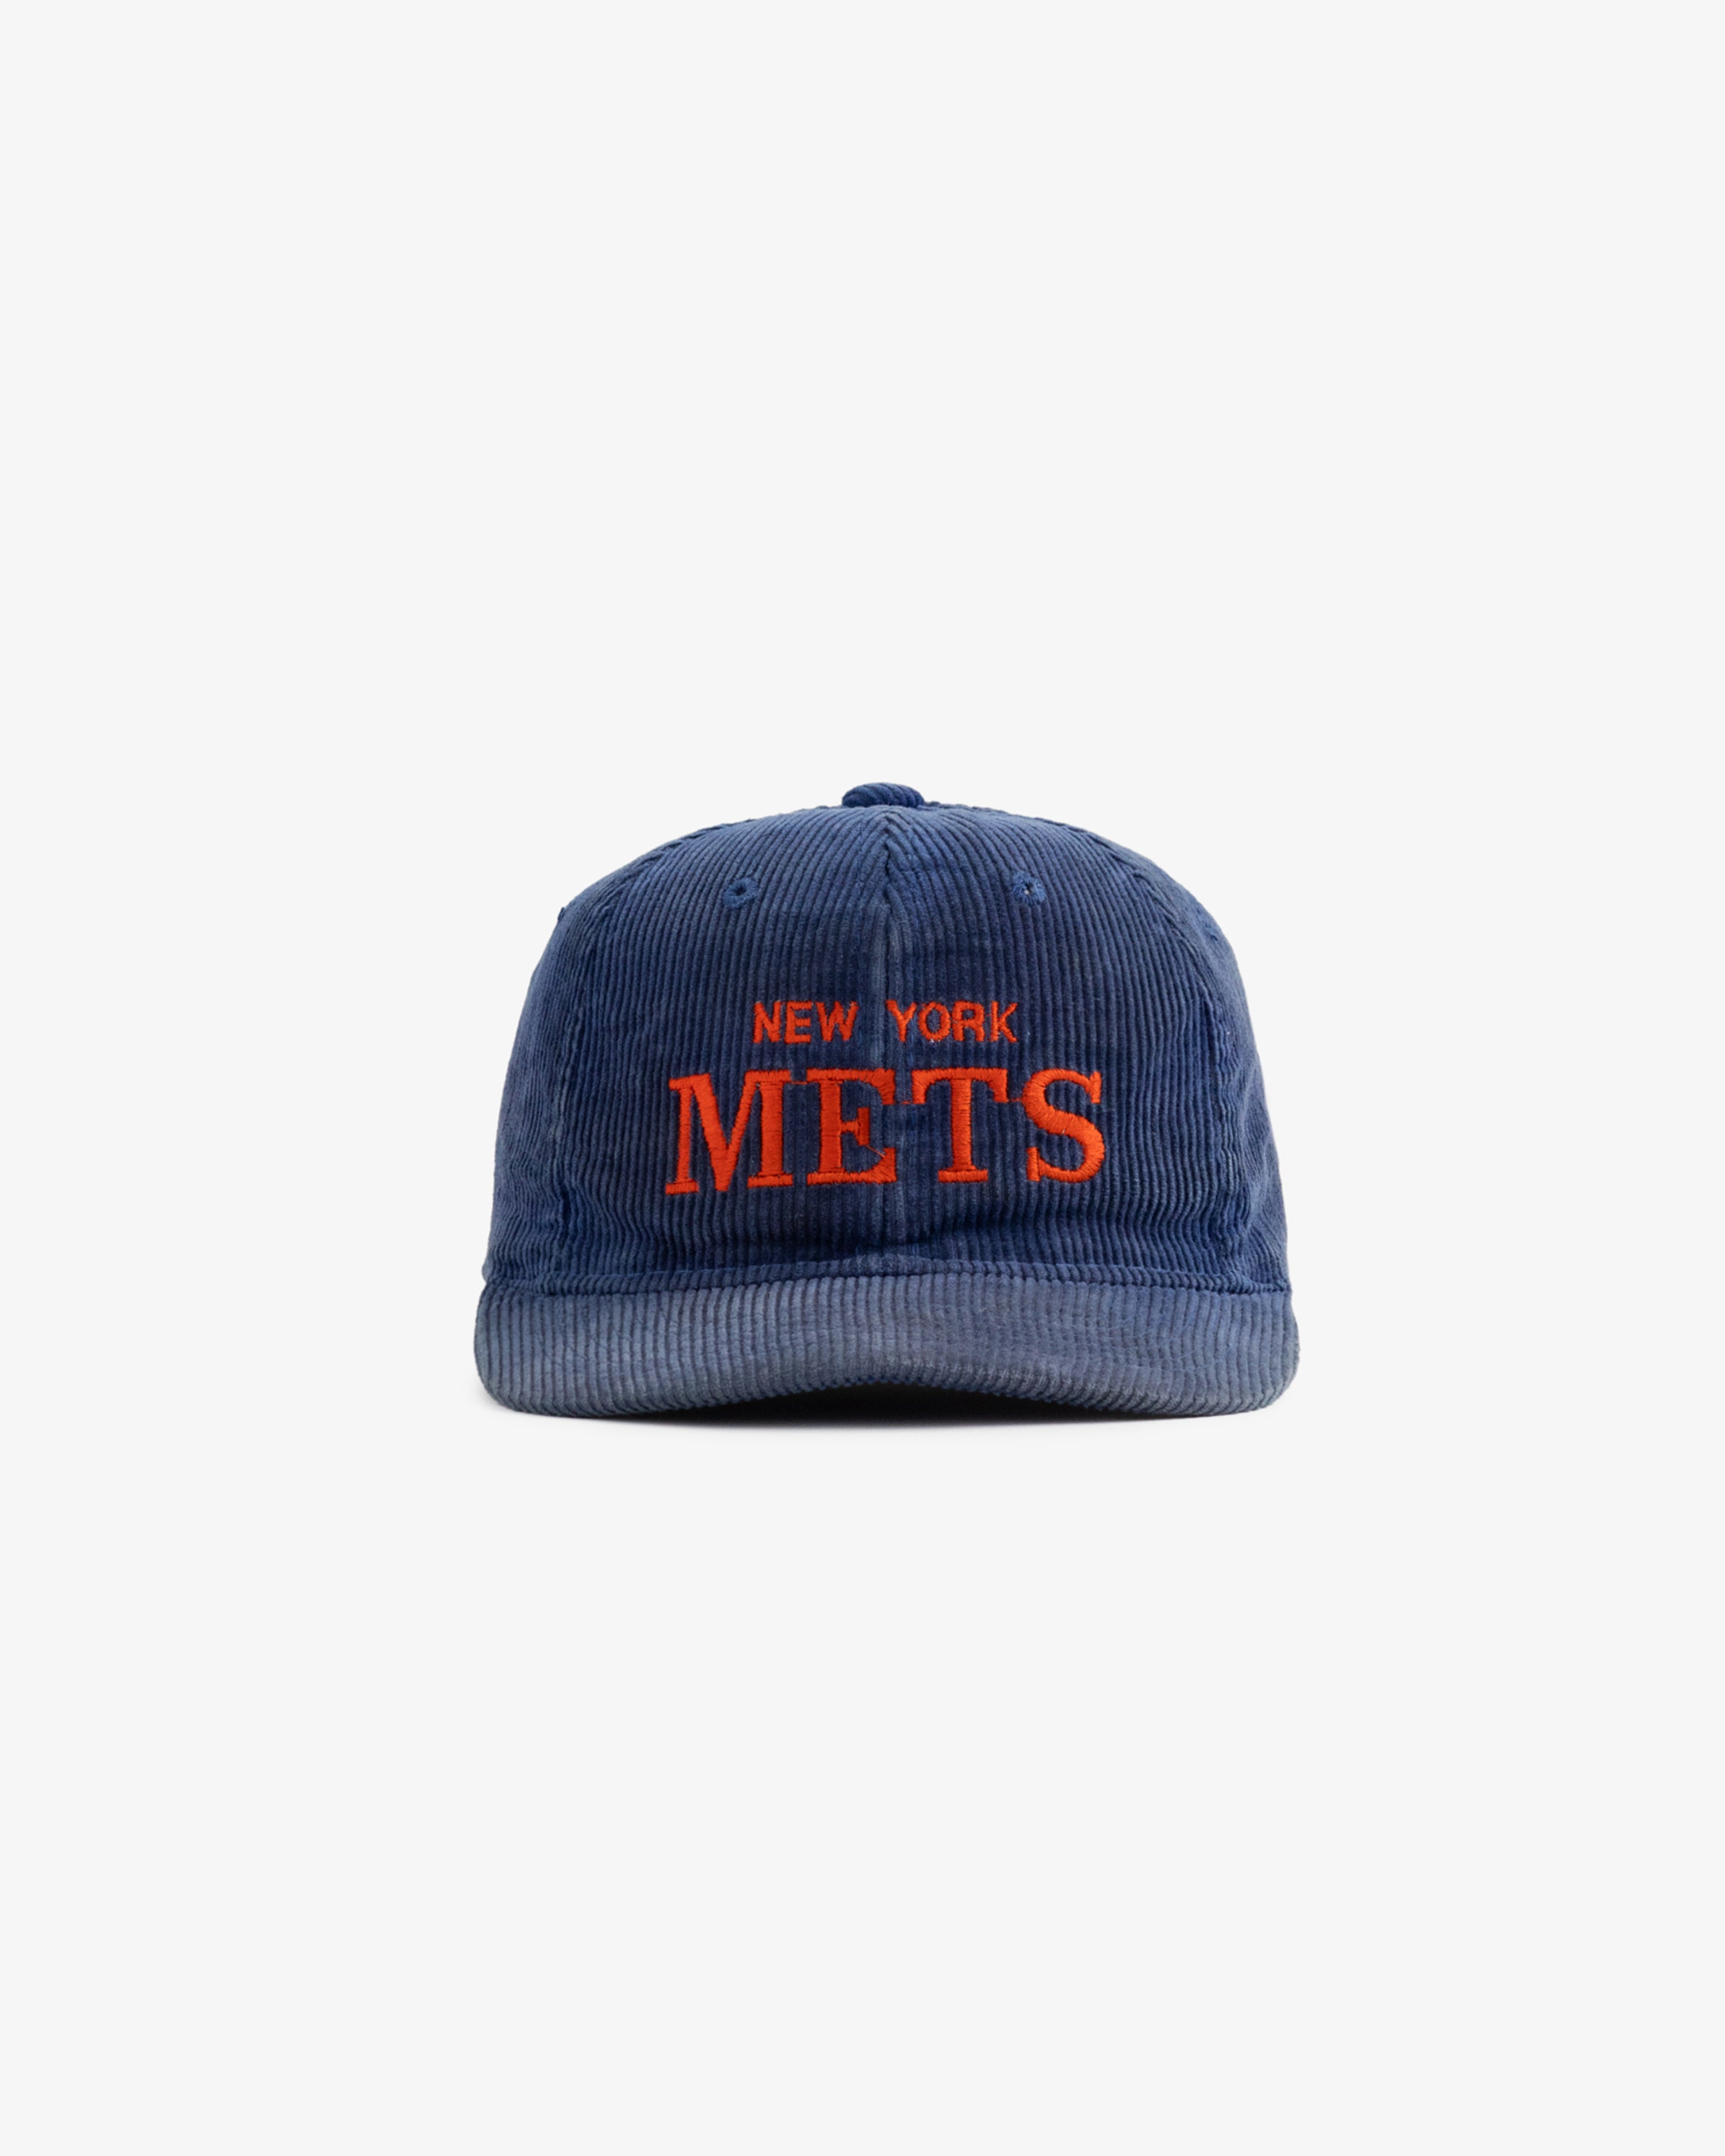 Vintage New York Mets Hat